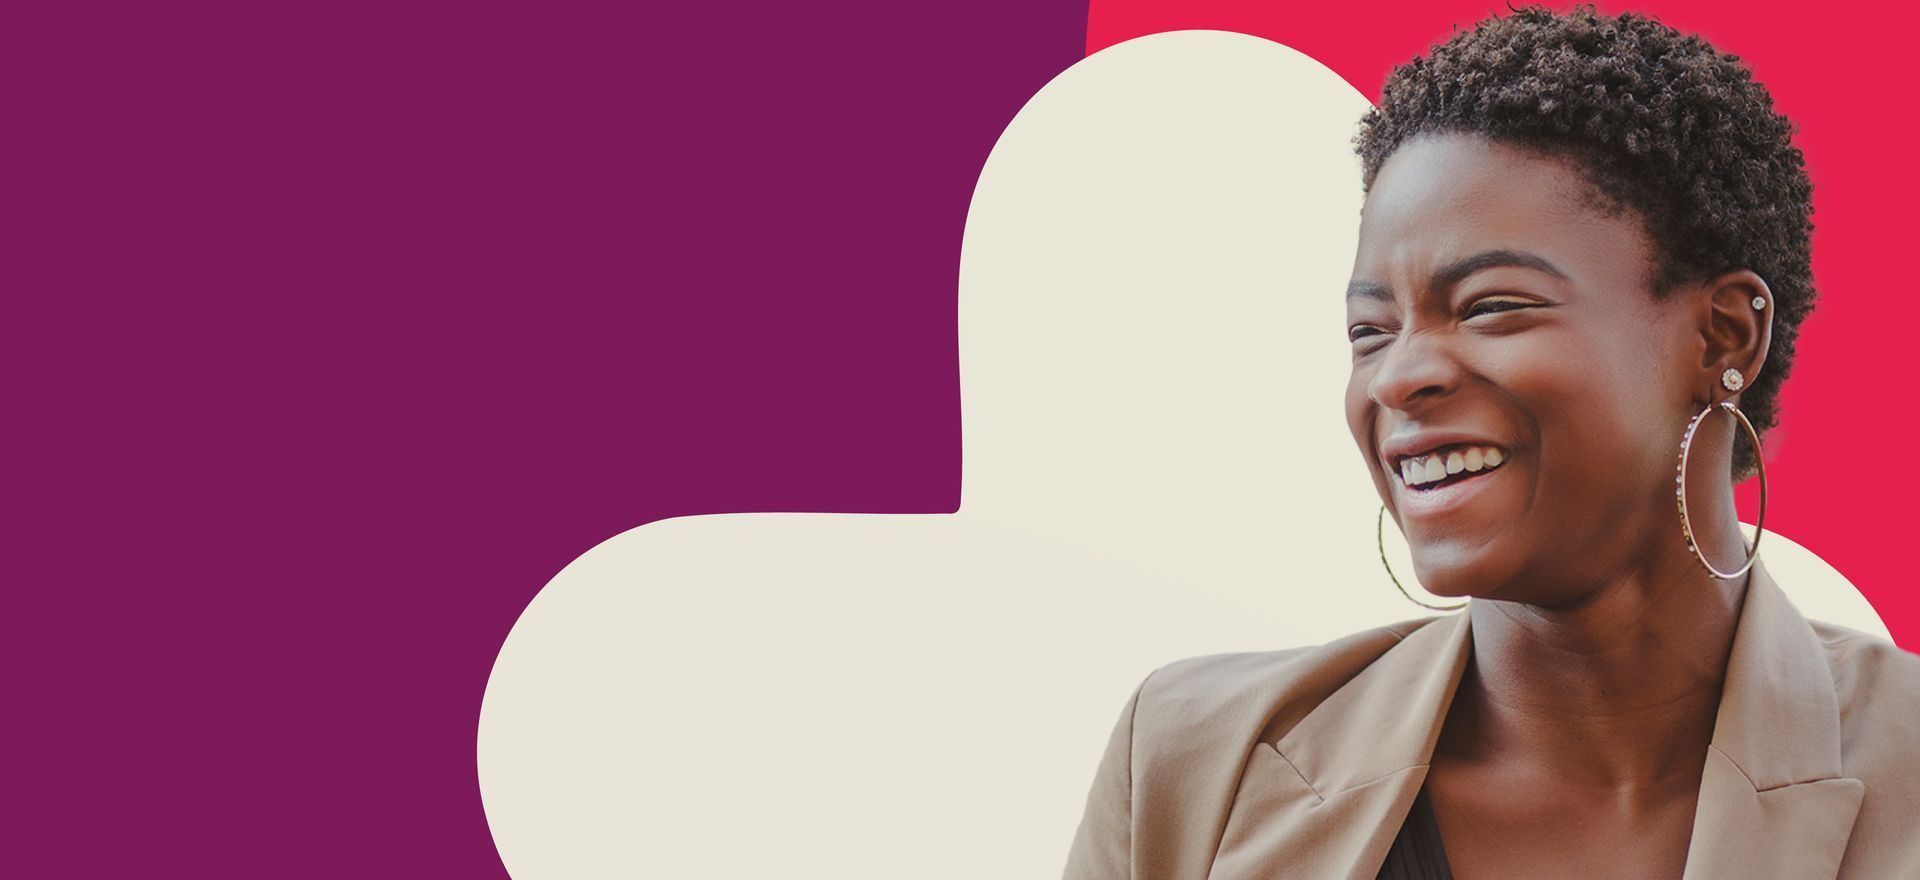 Mulher negra sorrindo representando uma empreendedora social.